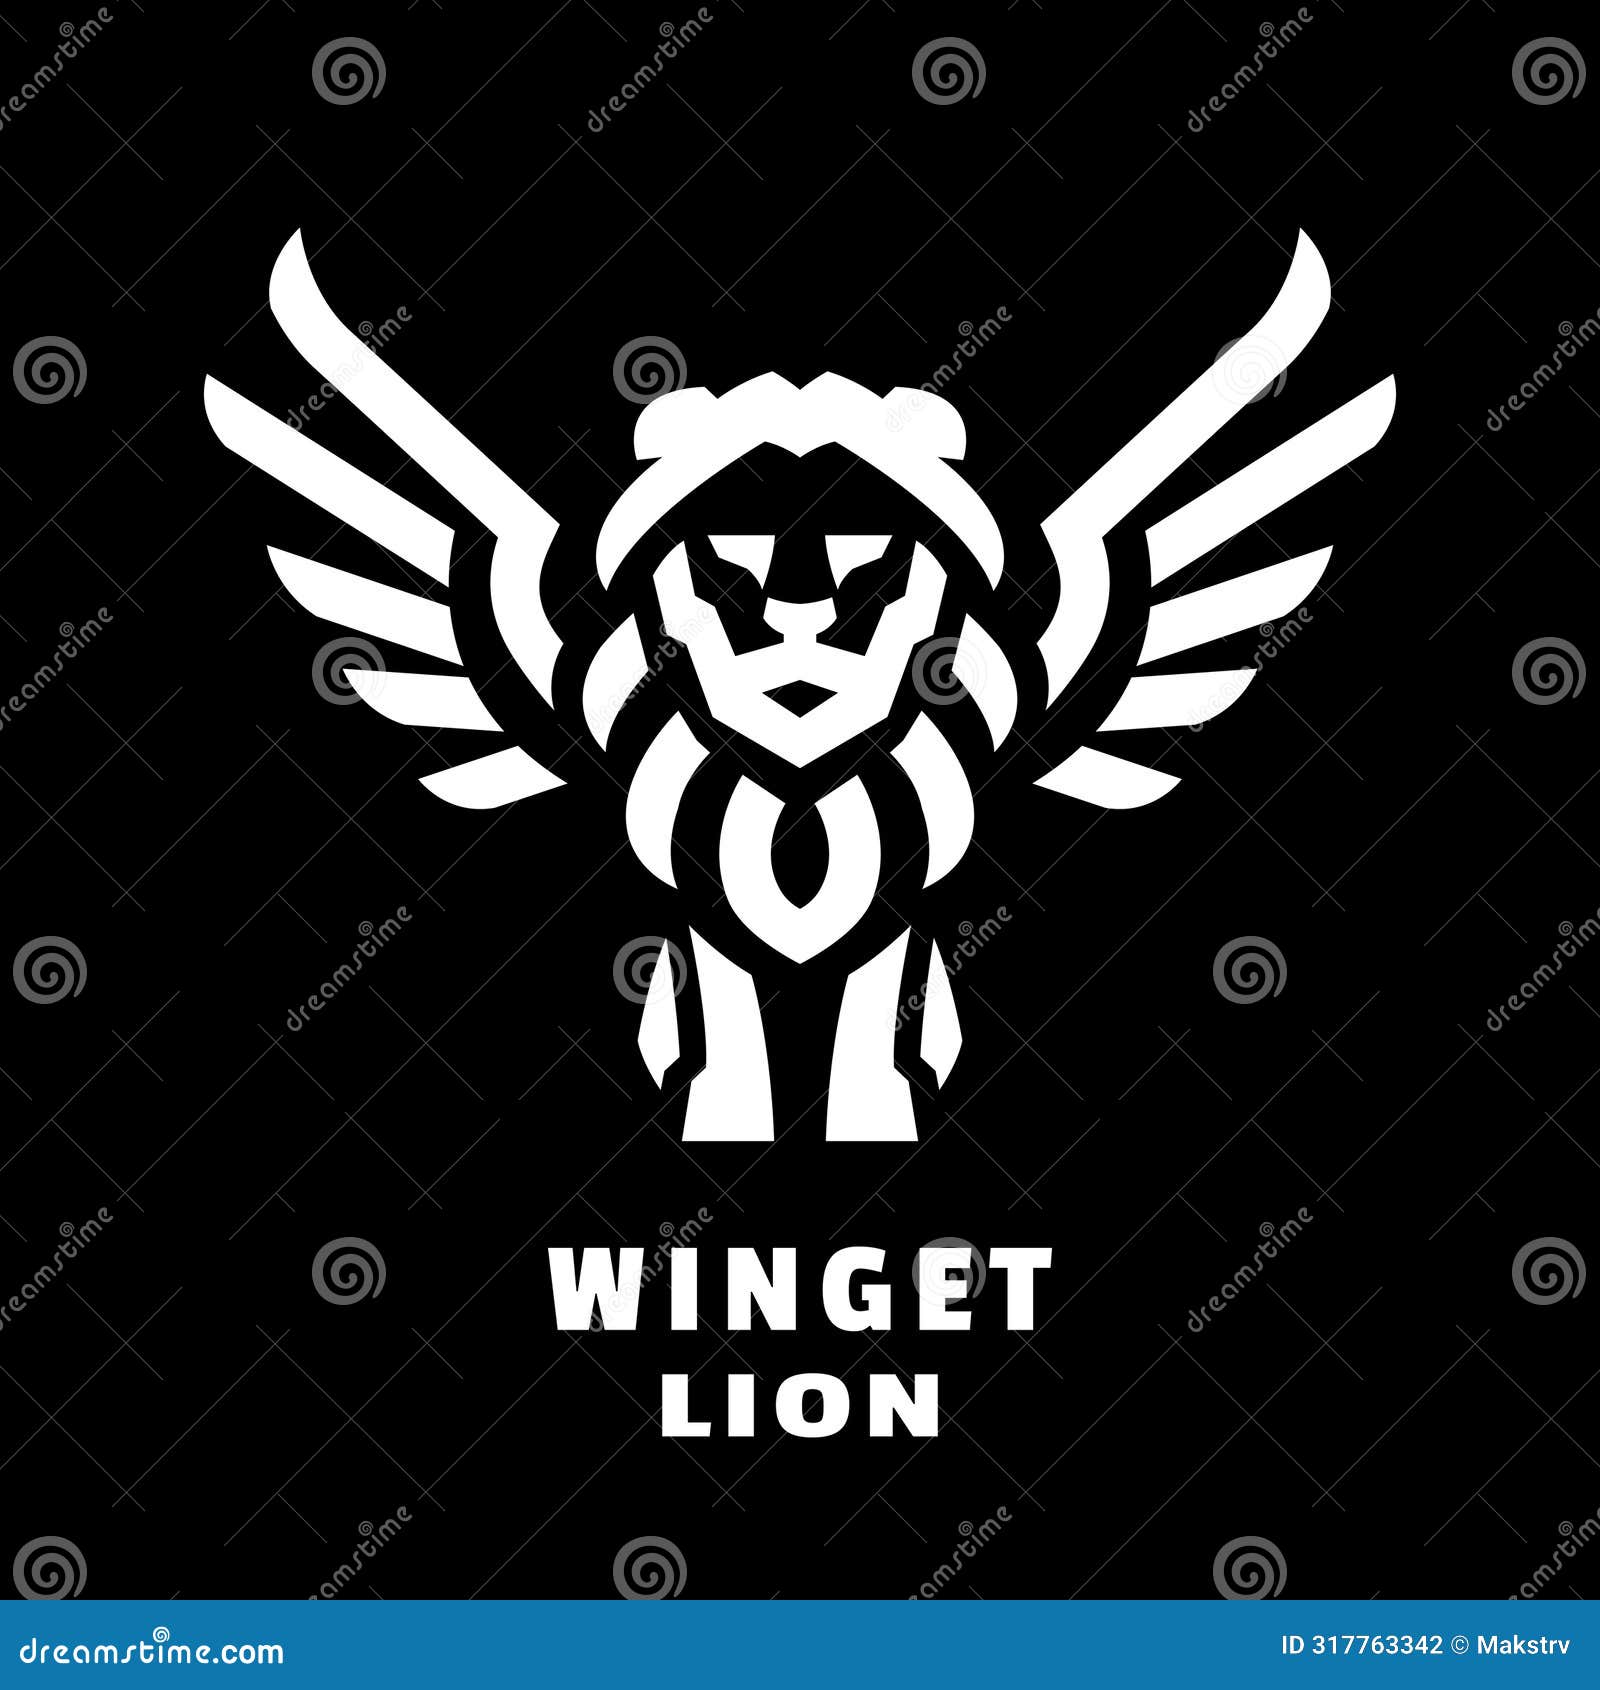 winged lion logo.